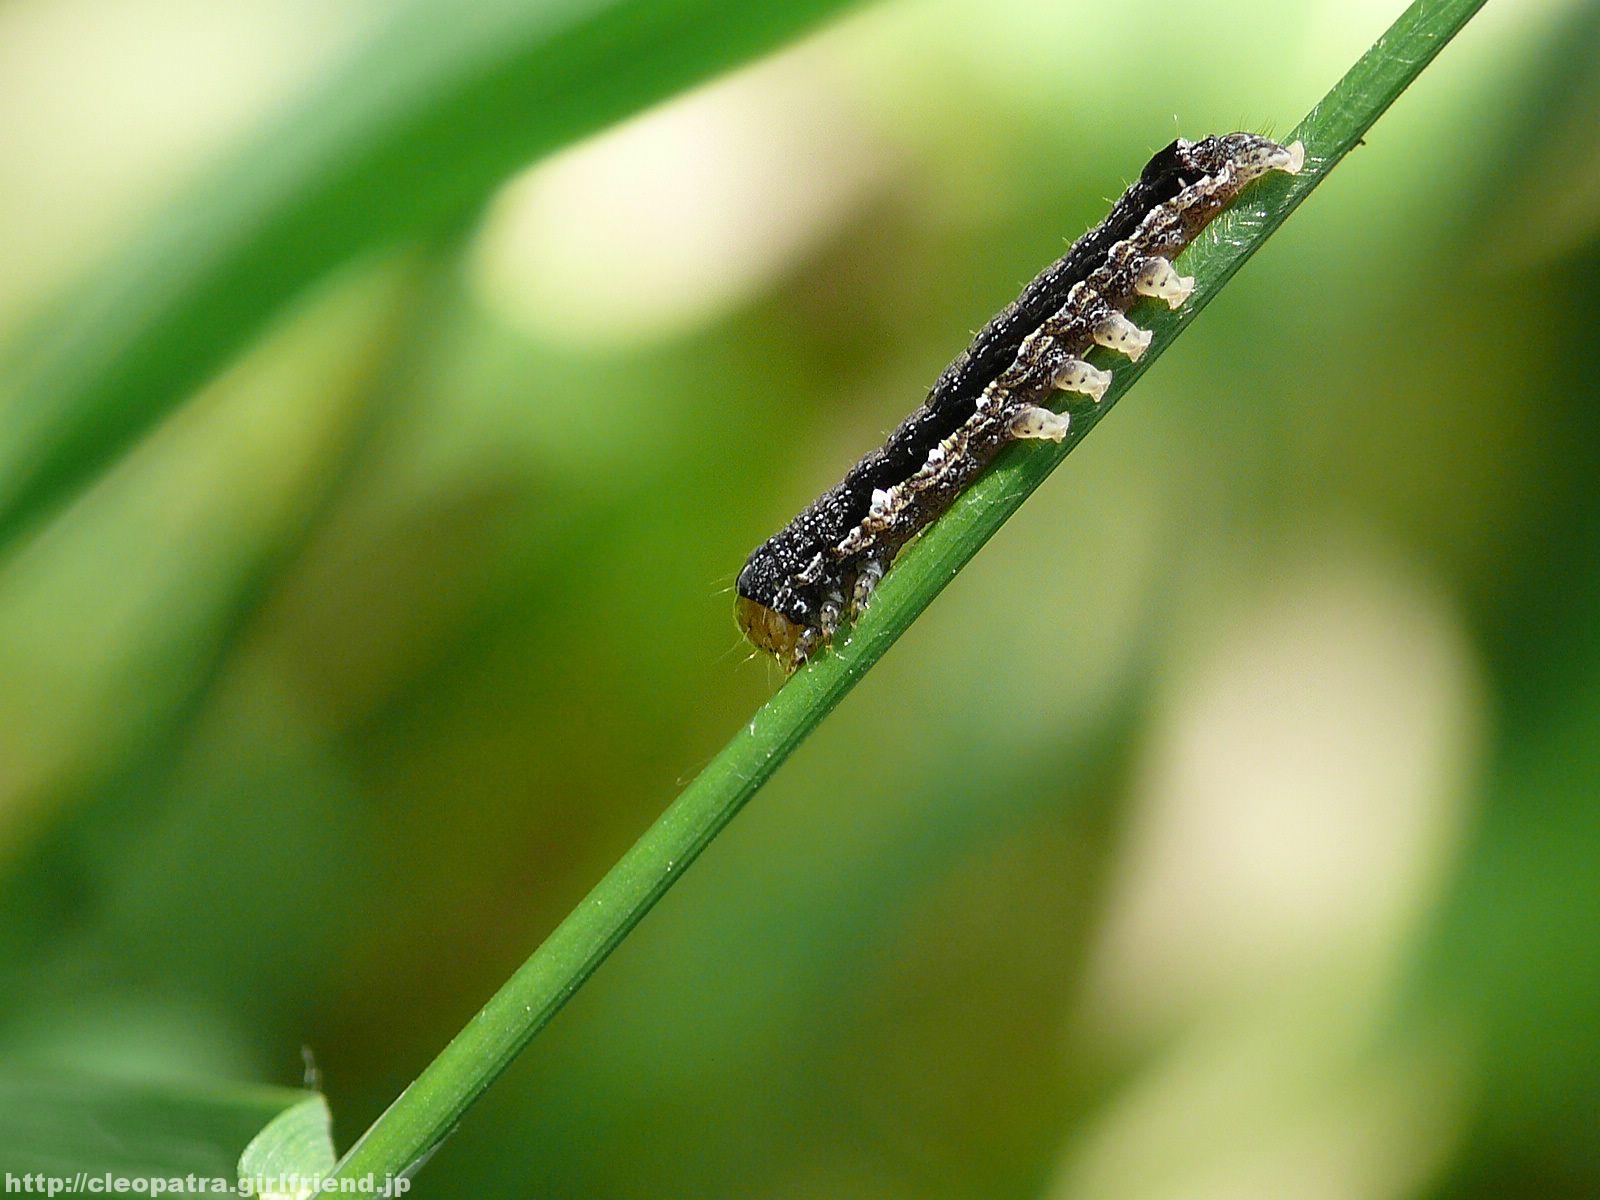 Black Larvae 黒い蛾の幼虫とコガタルリハムシの幼虫 3163s Insects Nature